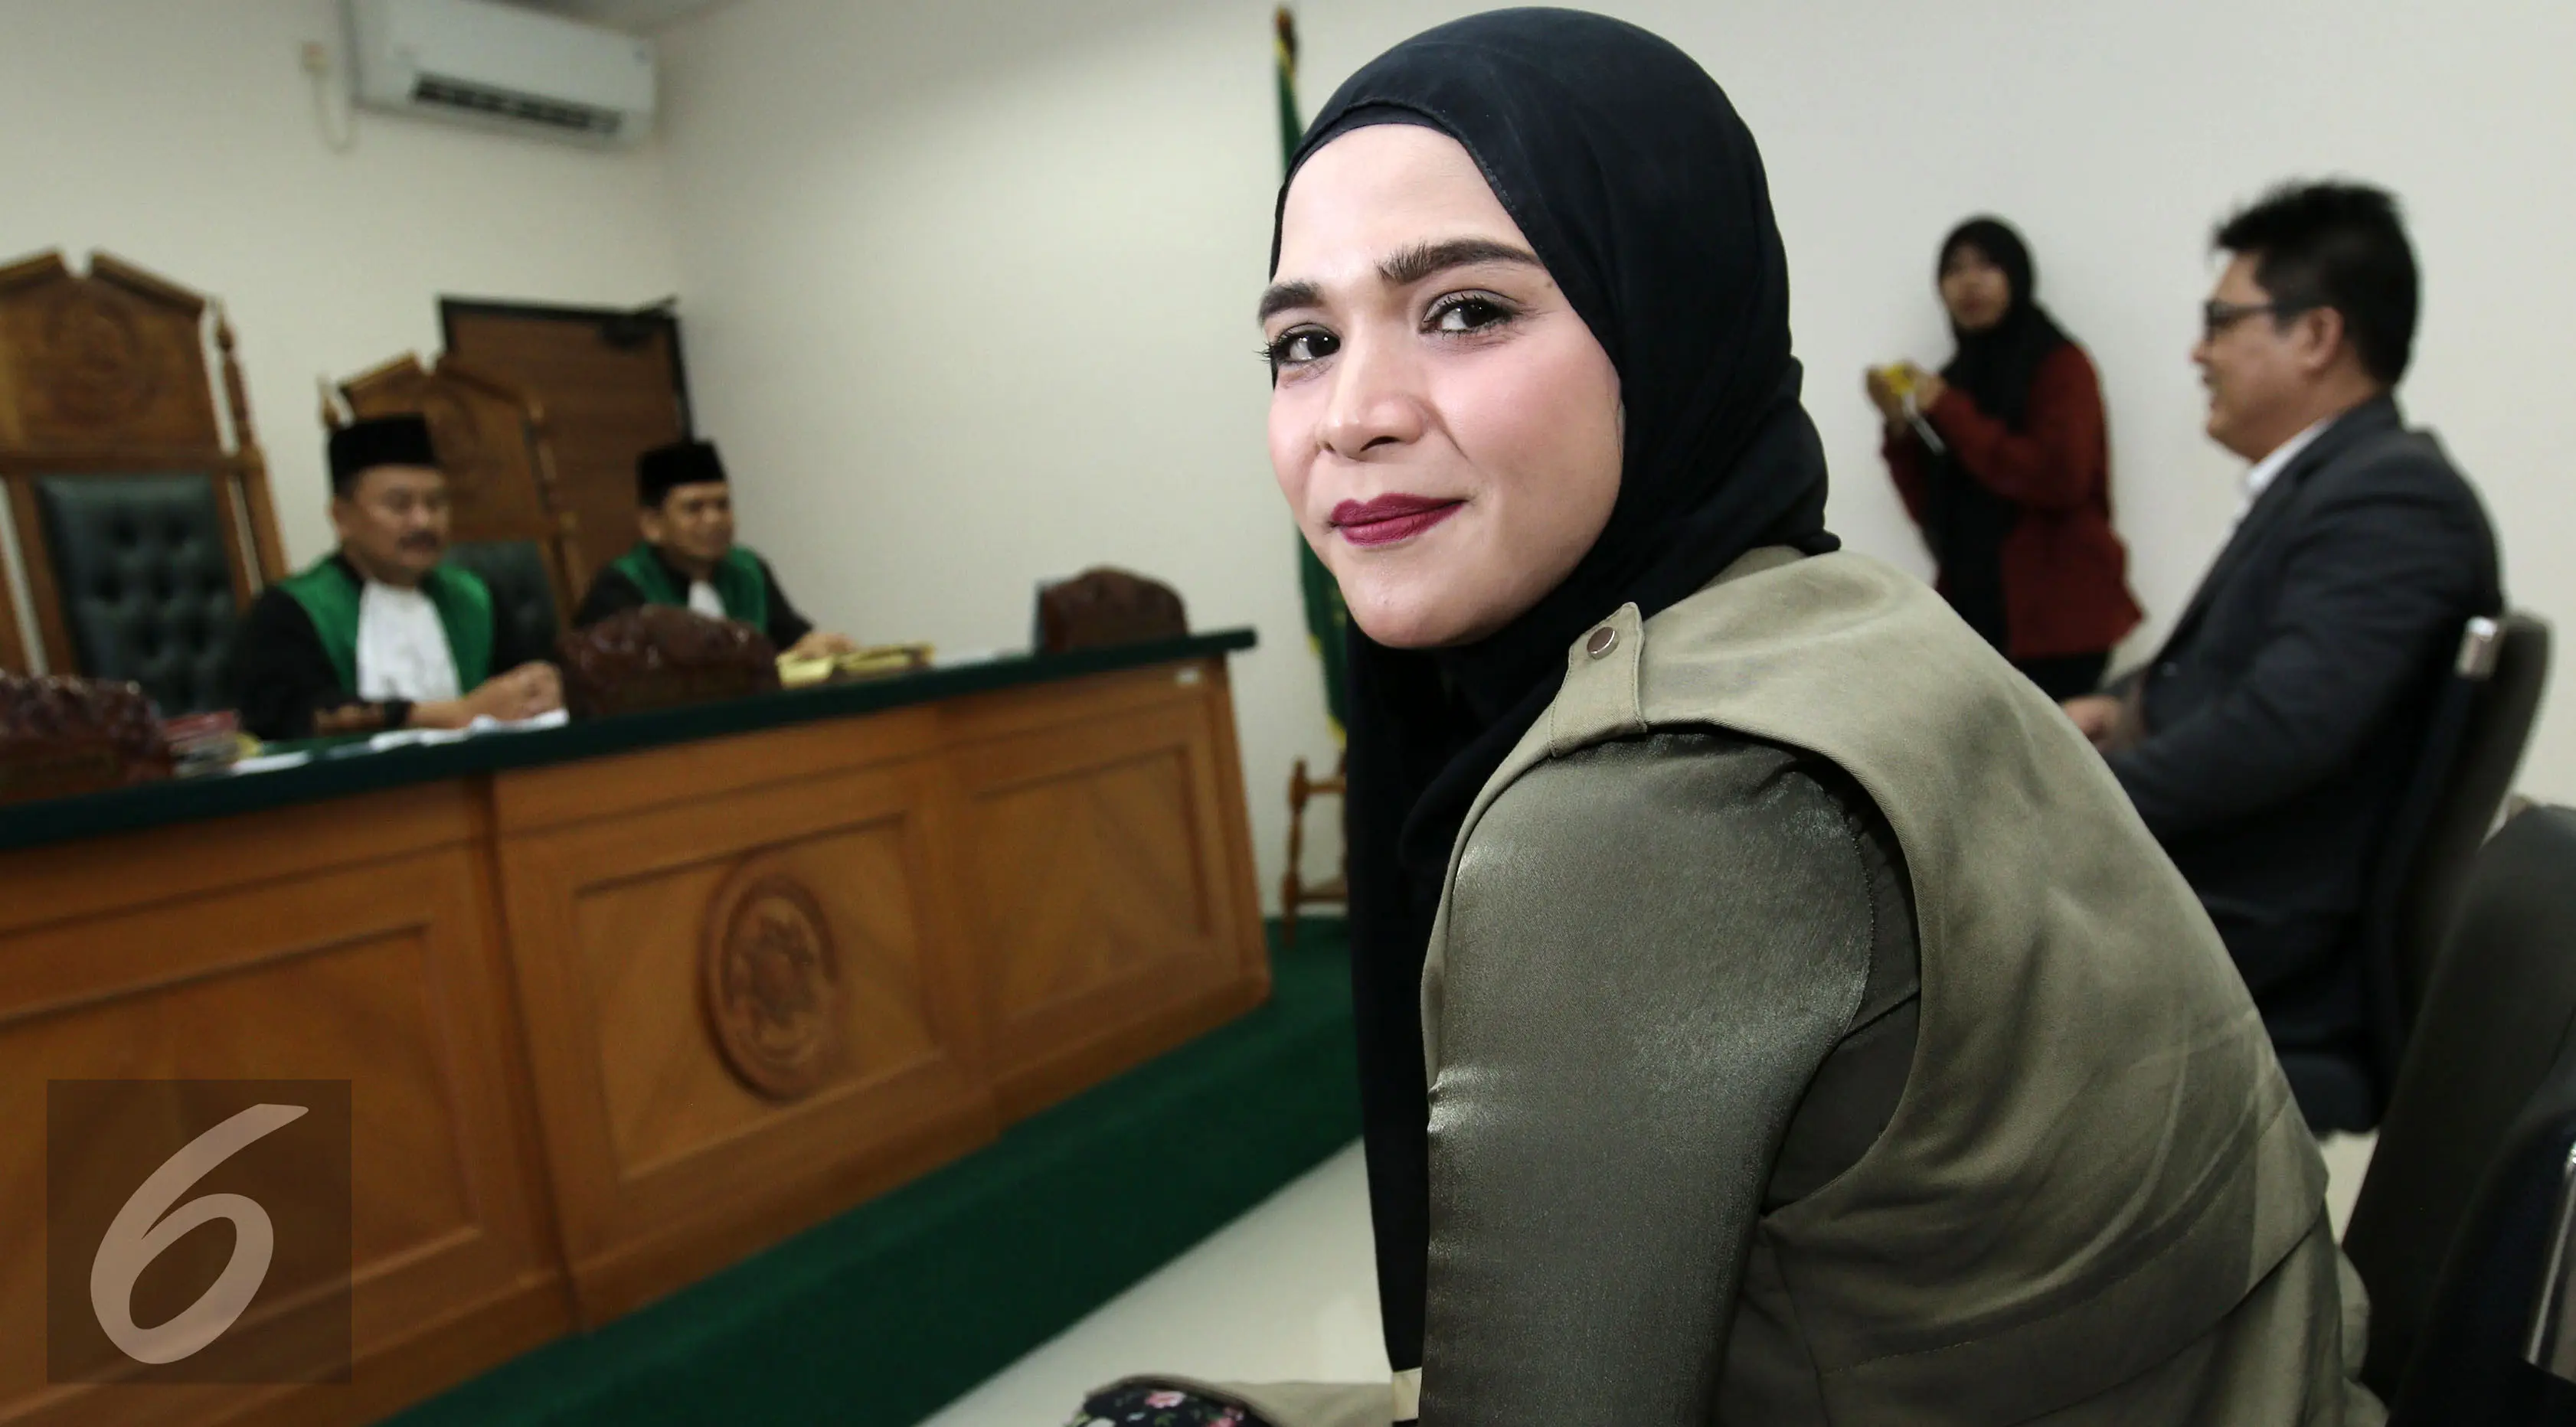 Istri Enji, Rosmanizar menjalani sidang cerai di Pengadilan Agama Jakarta Timur, Rabu (16/8/2017). Herman Zakharia/Liputan6.com)